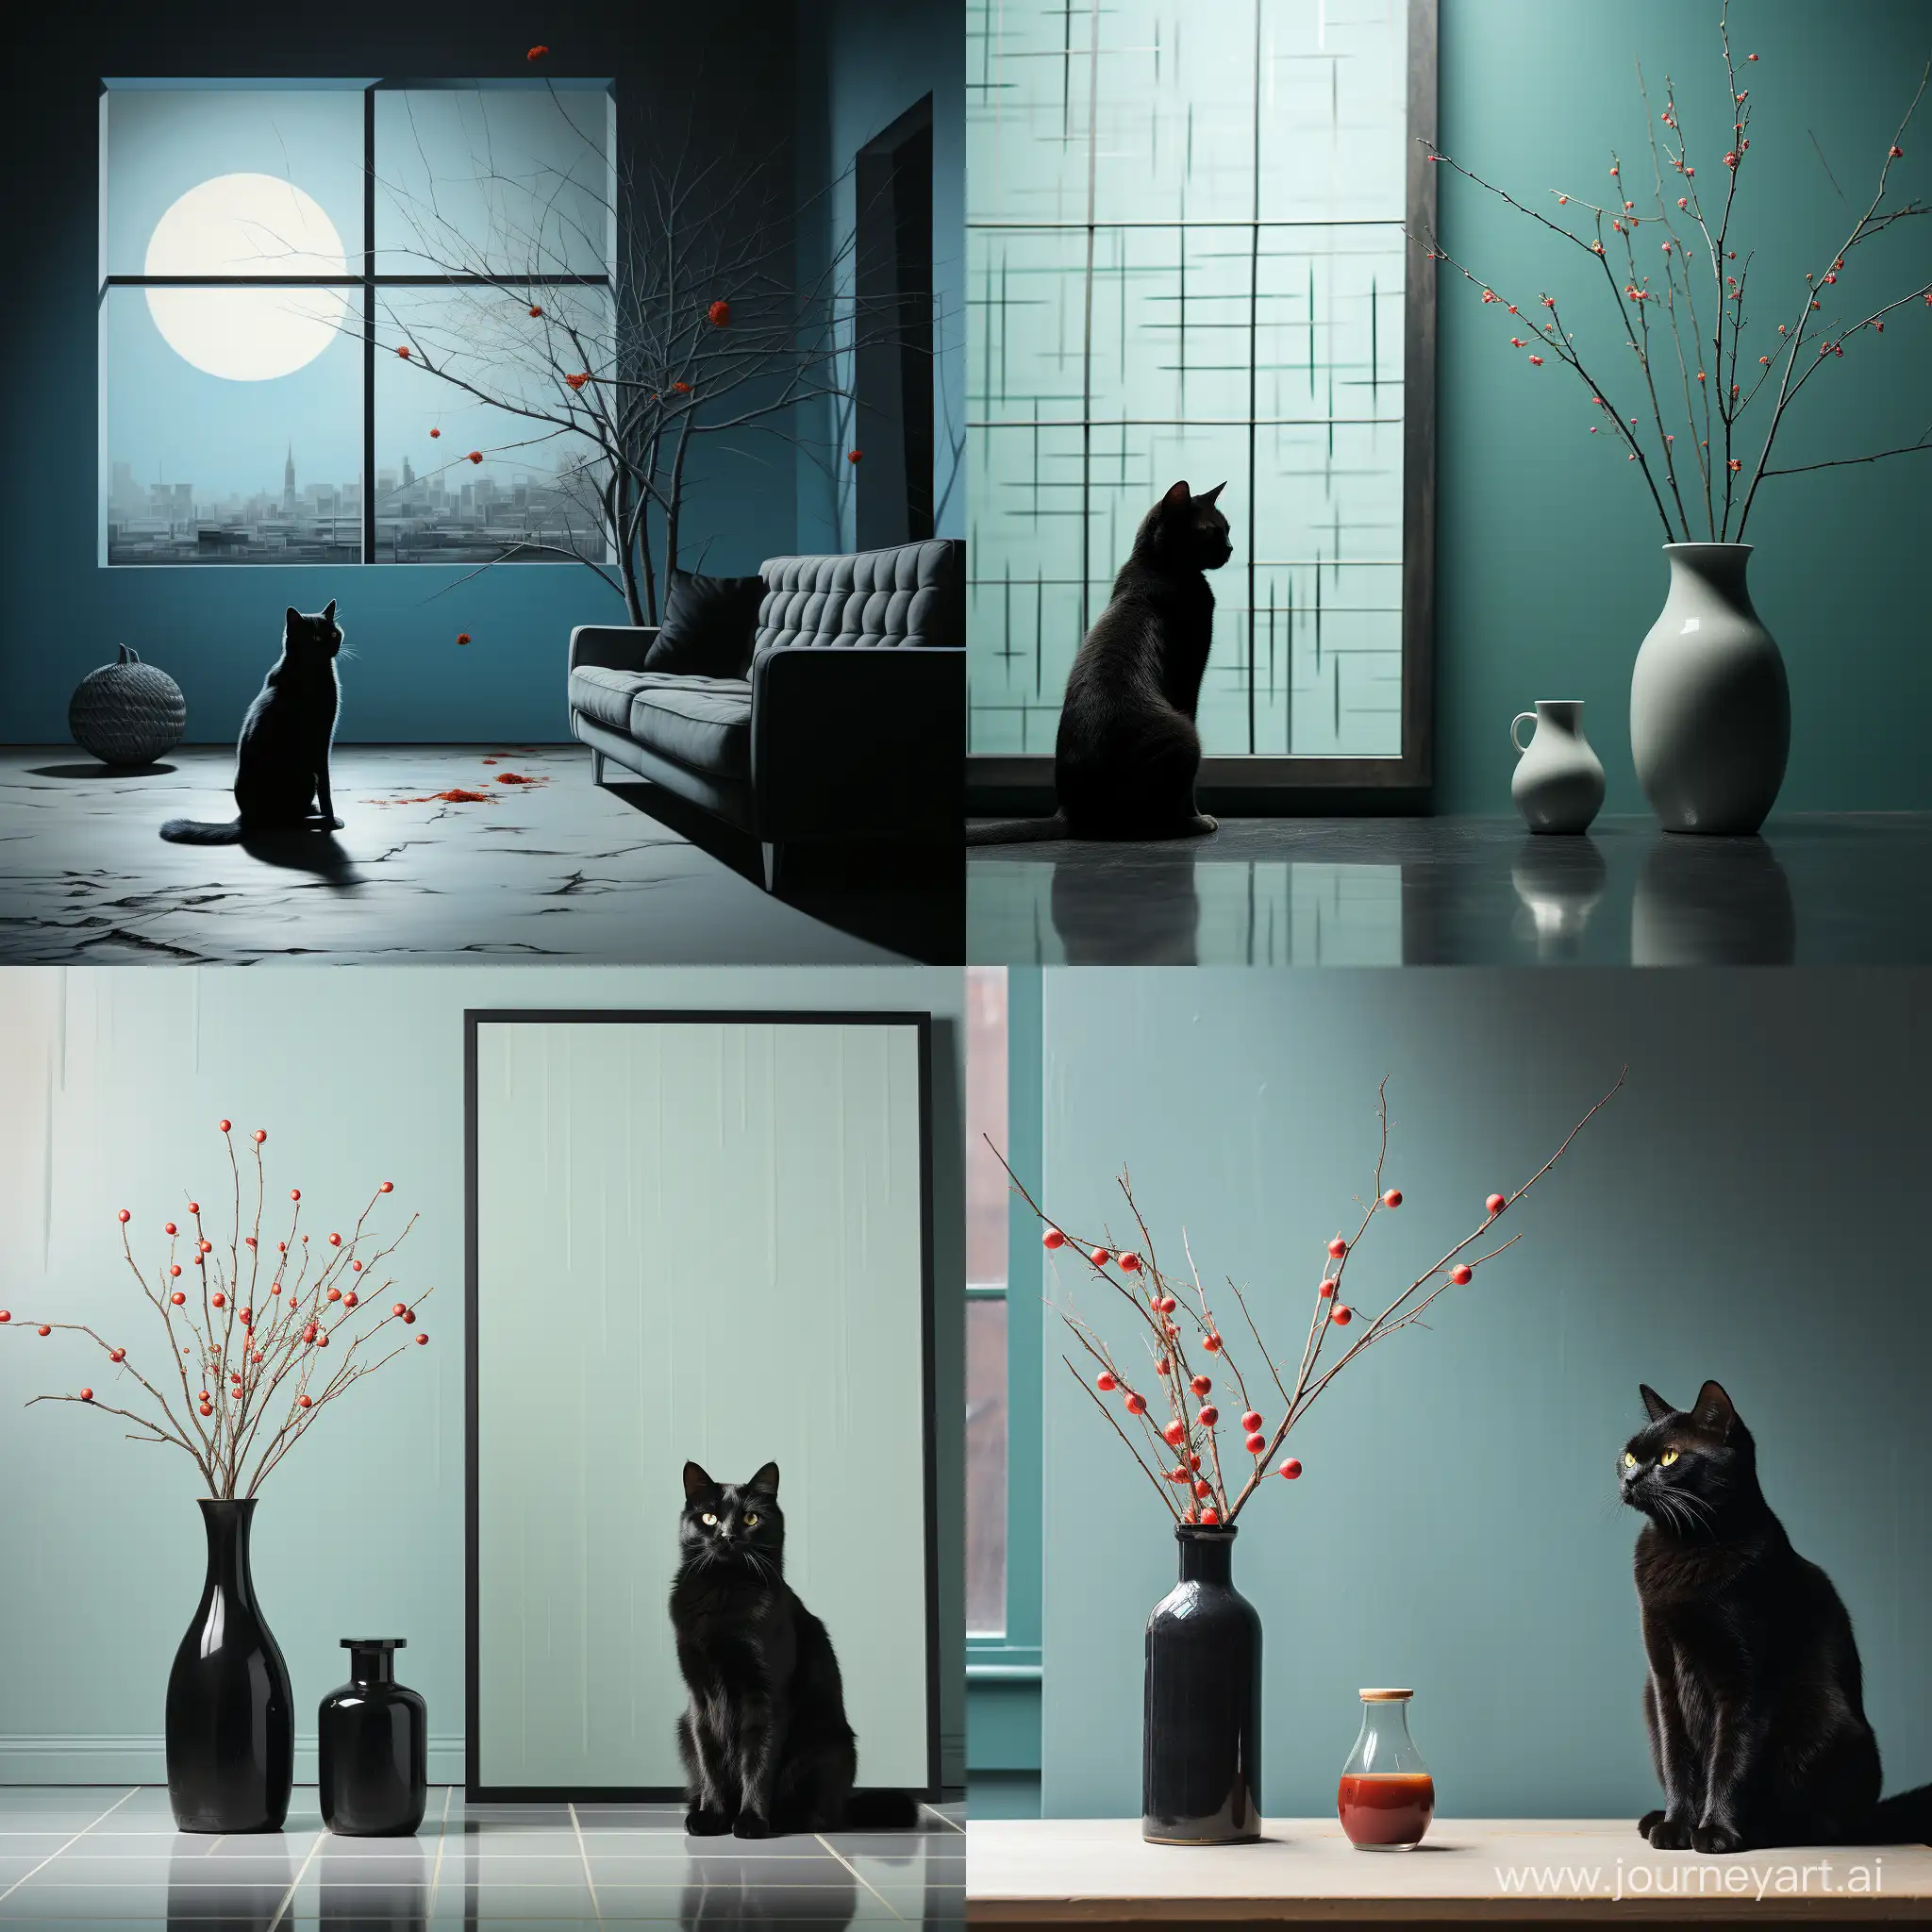 минимализм::1.5, голубая кошка с черными узорами лениво на фоне окна, мягкий свет проникает через окна отбрасывая блики на кошку, --s 1000